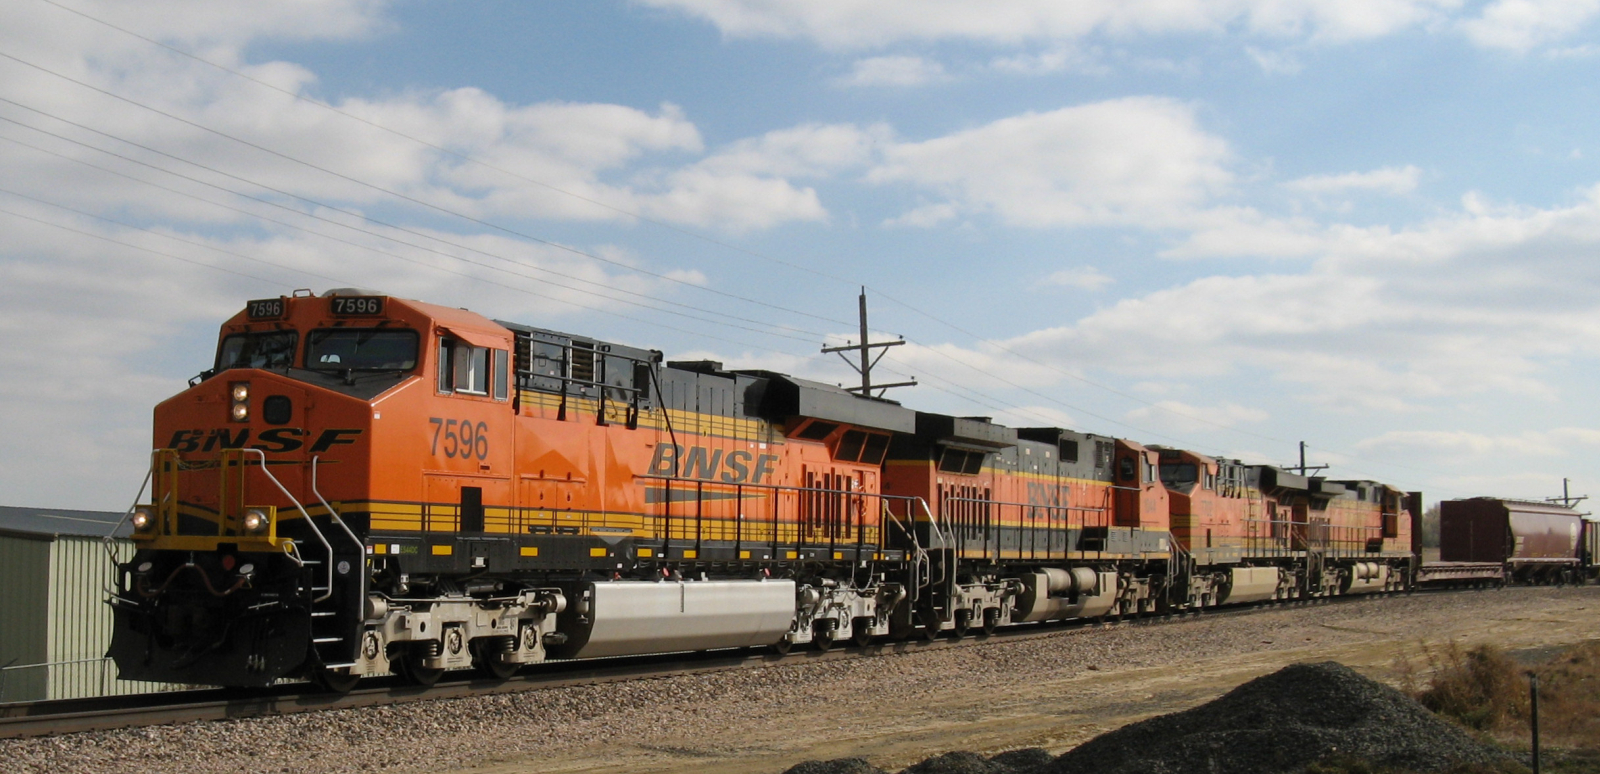 Four Santa Fe locomotives in November 2007 in Loveland, Colorado